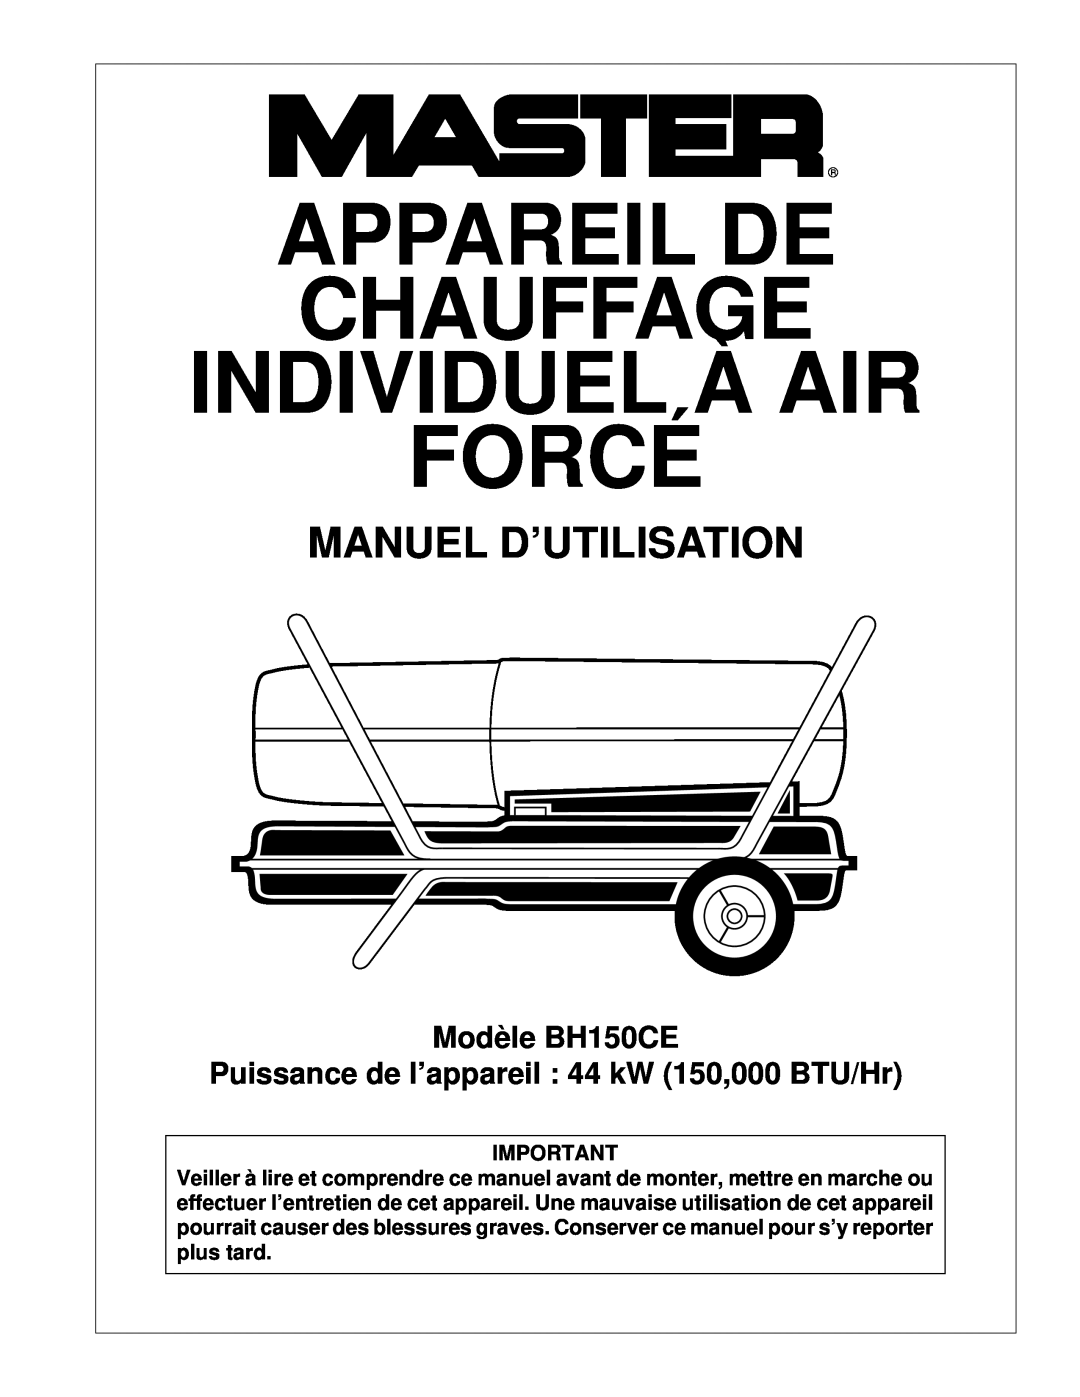 Master Lock owner manual Appareil De Chauffage Individuel À Air Forcé, Manuel D’Utilisation, Modèle BH150CE 